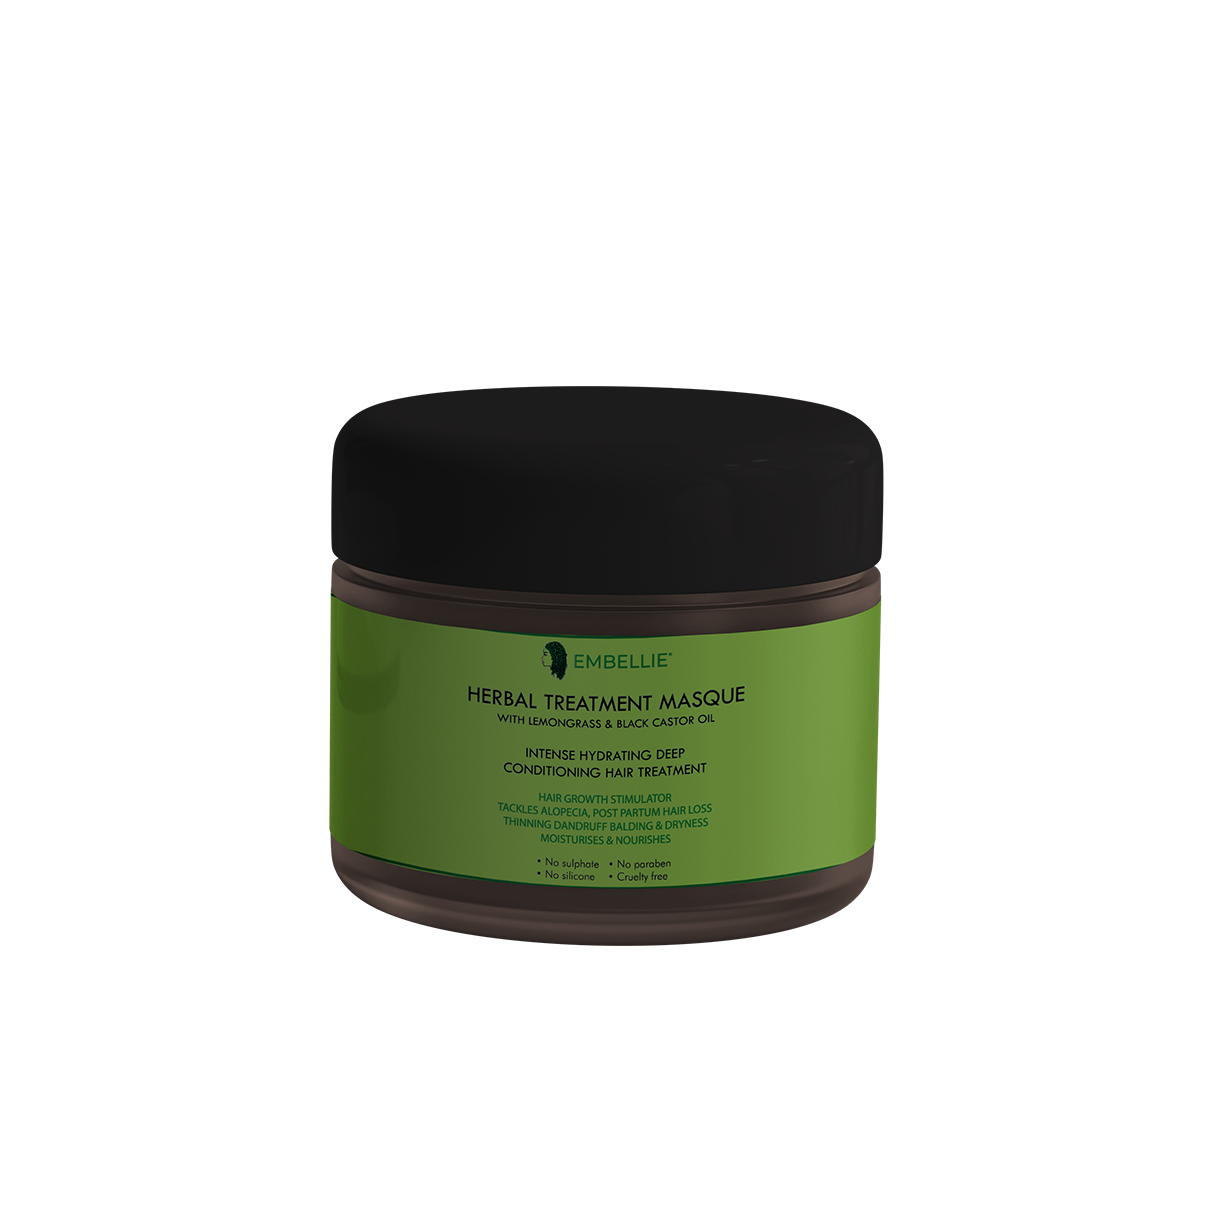 Herbal treatment masque with lemongrass & black castor oil